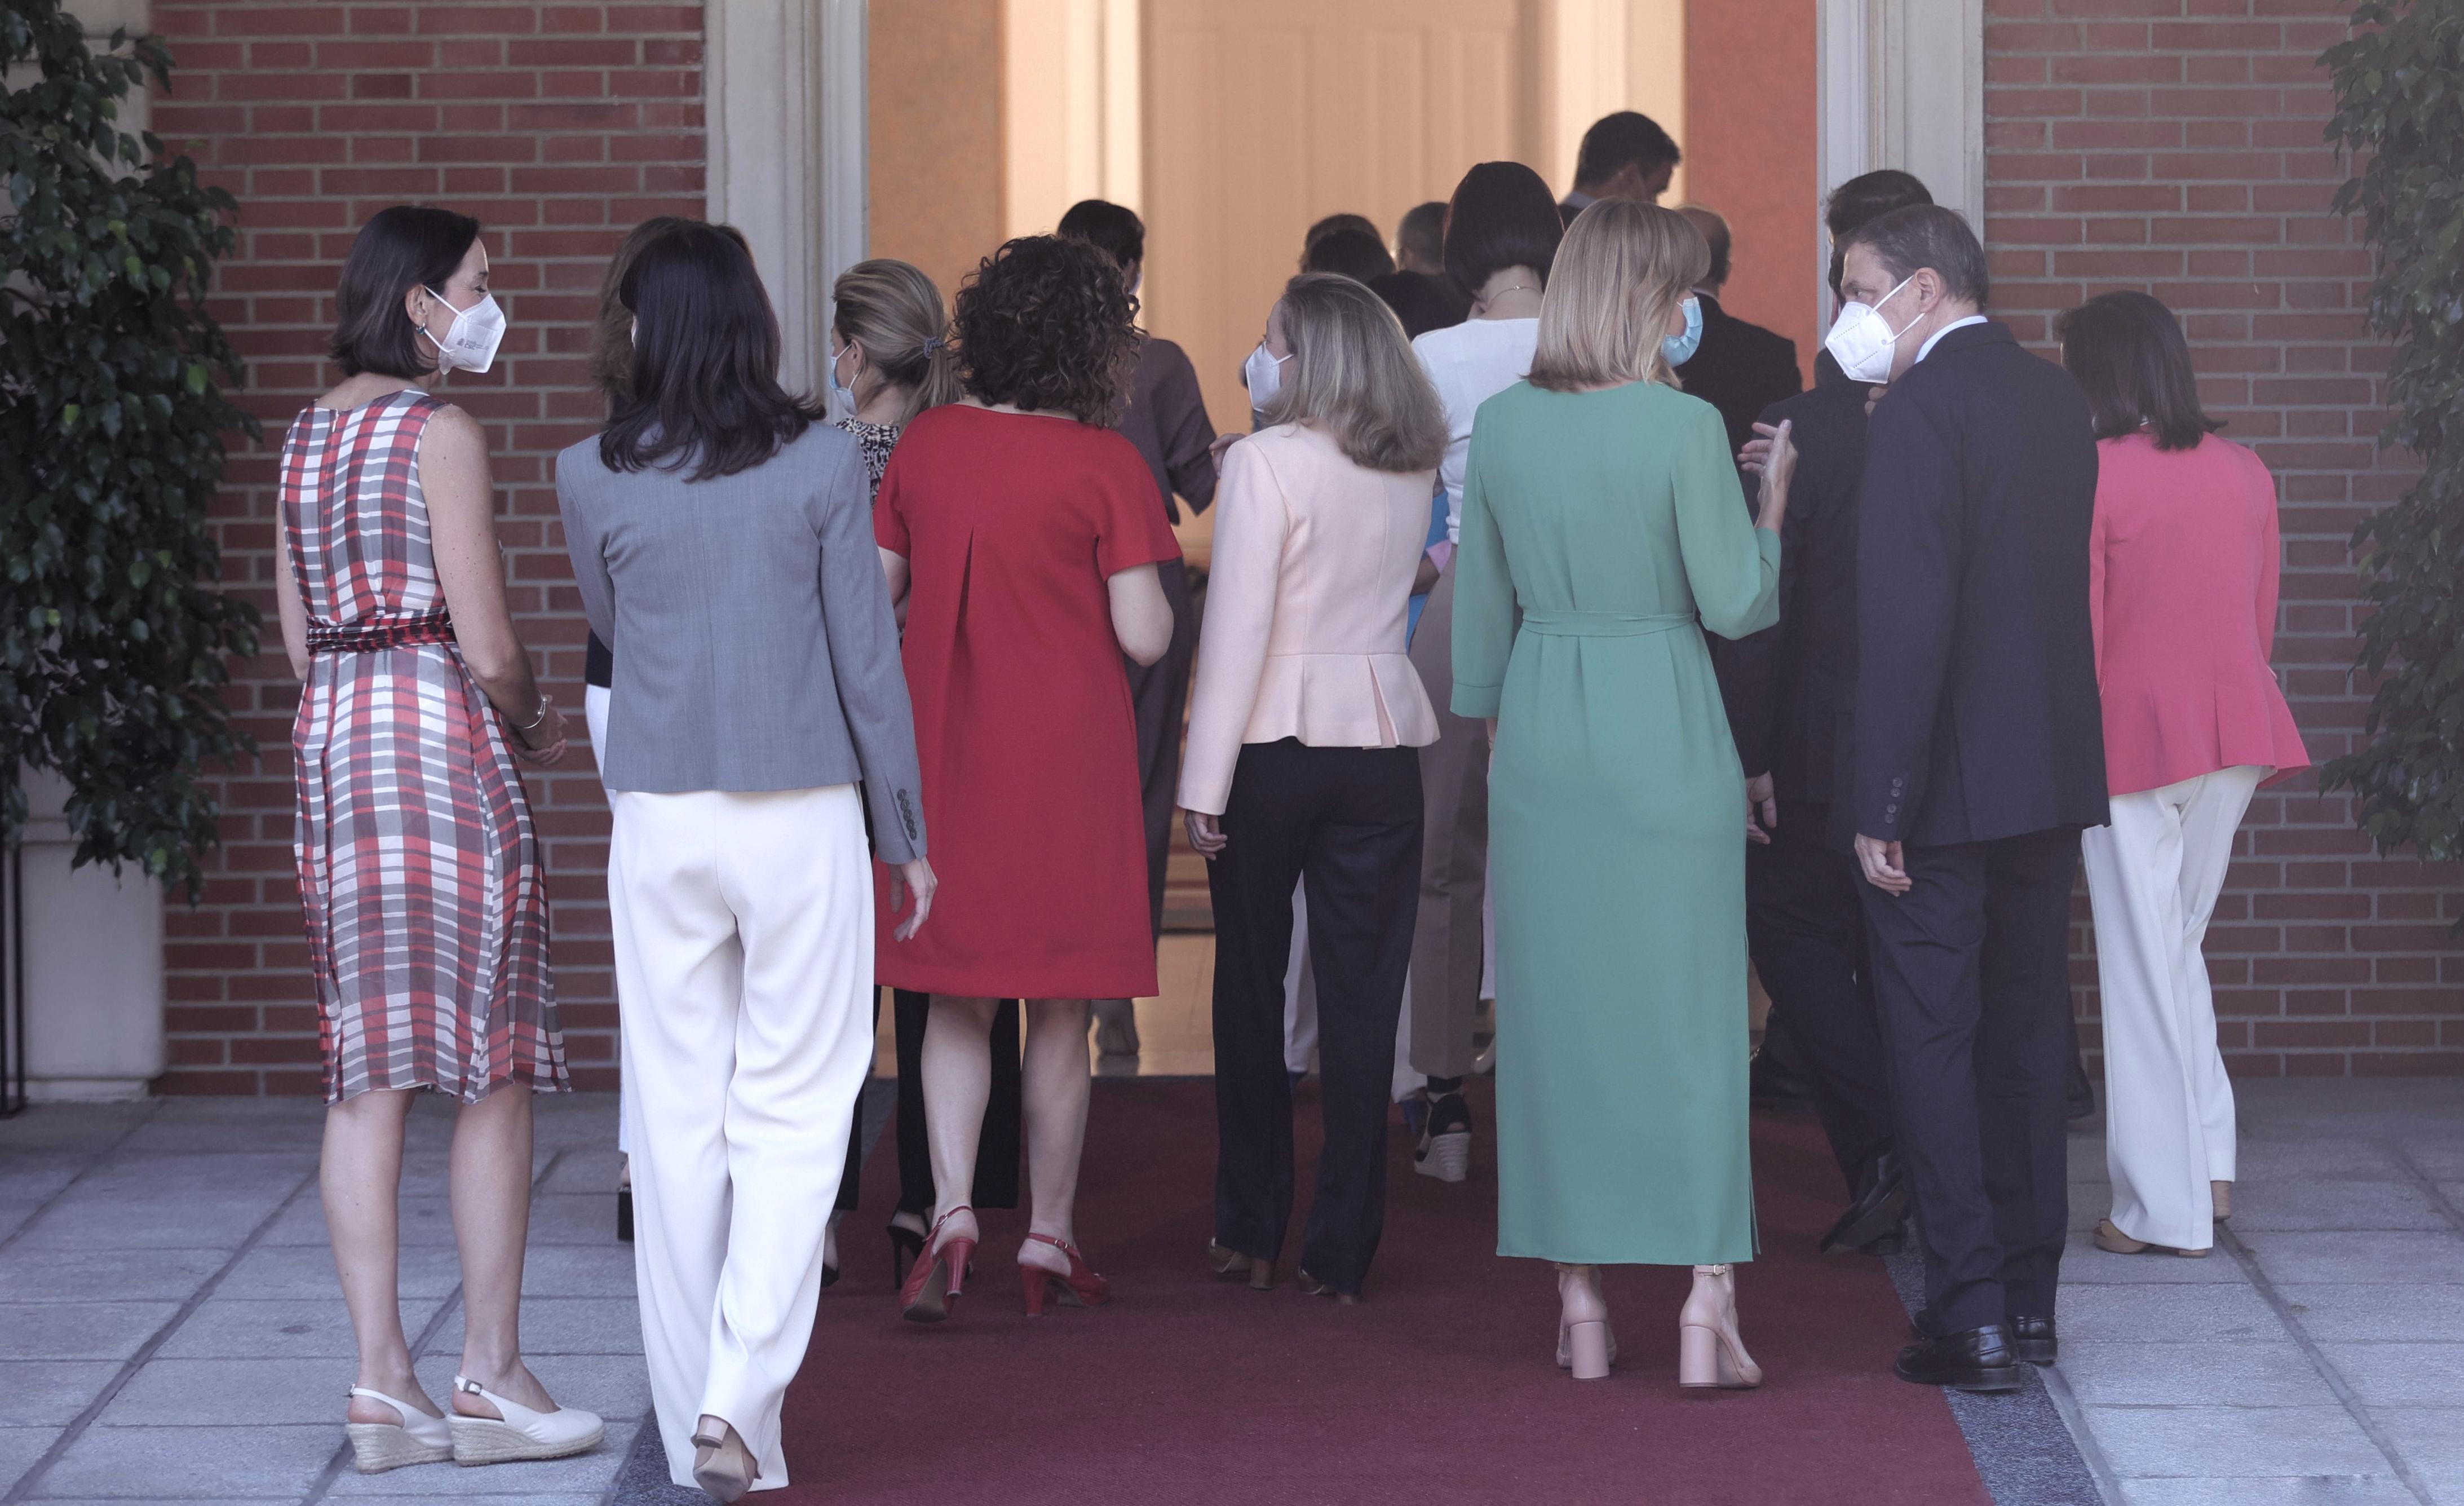 Tras posar para la foto de familia, todos los ministros entran al Palacio de la Moncloa, a donde han llegado para participar en el primer Consejo de Ministros tras la remodelación del Gobierno, a 13 de julio de 2021, en Madrid (España). Hoy se celebra el 